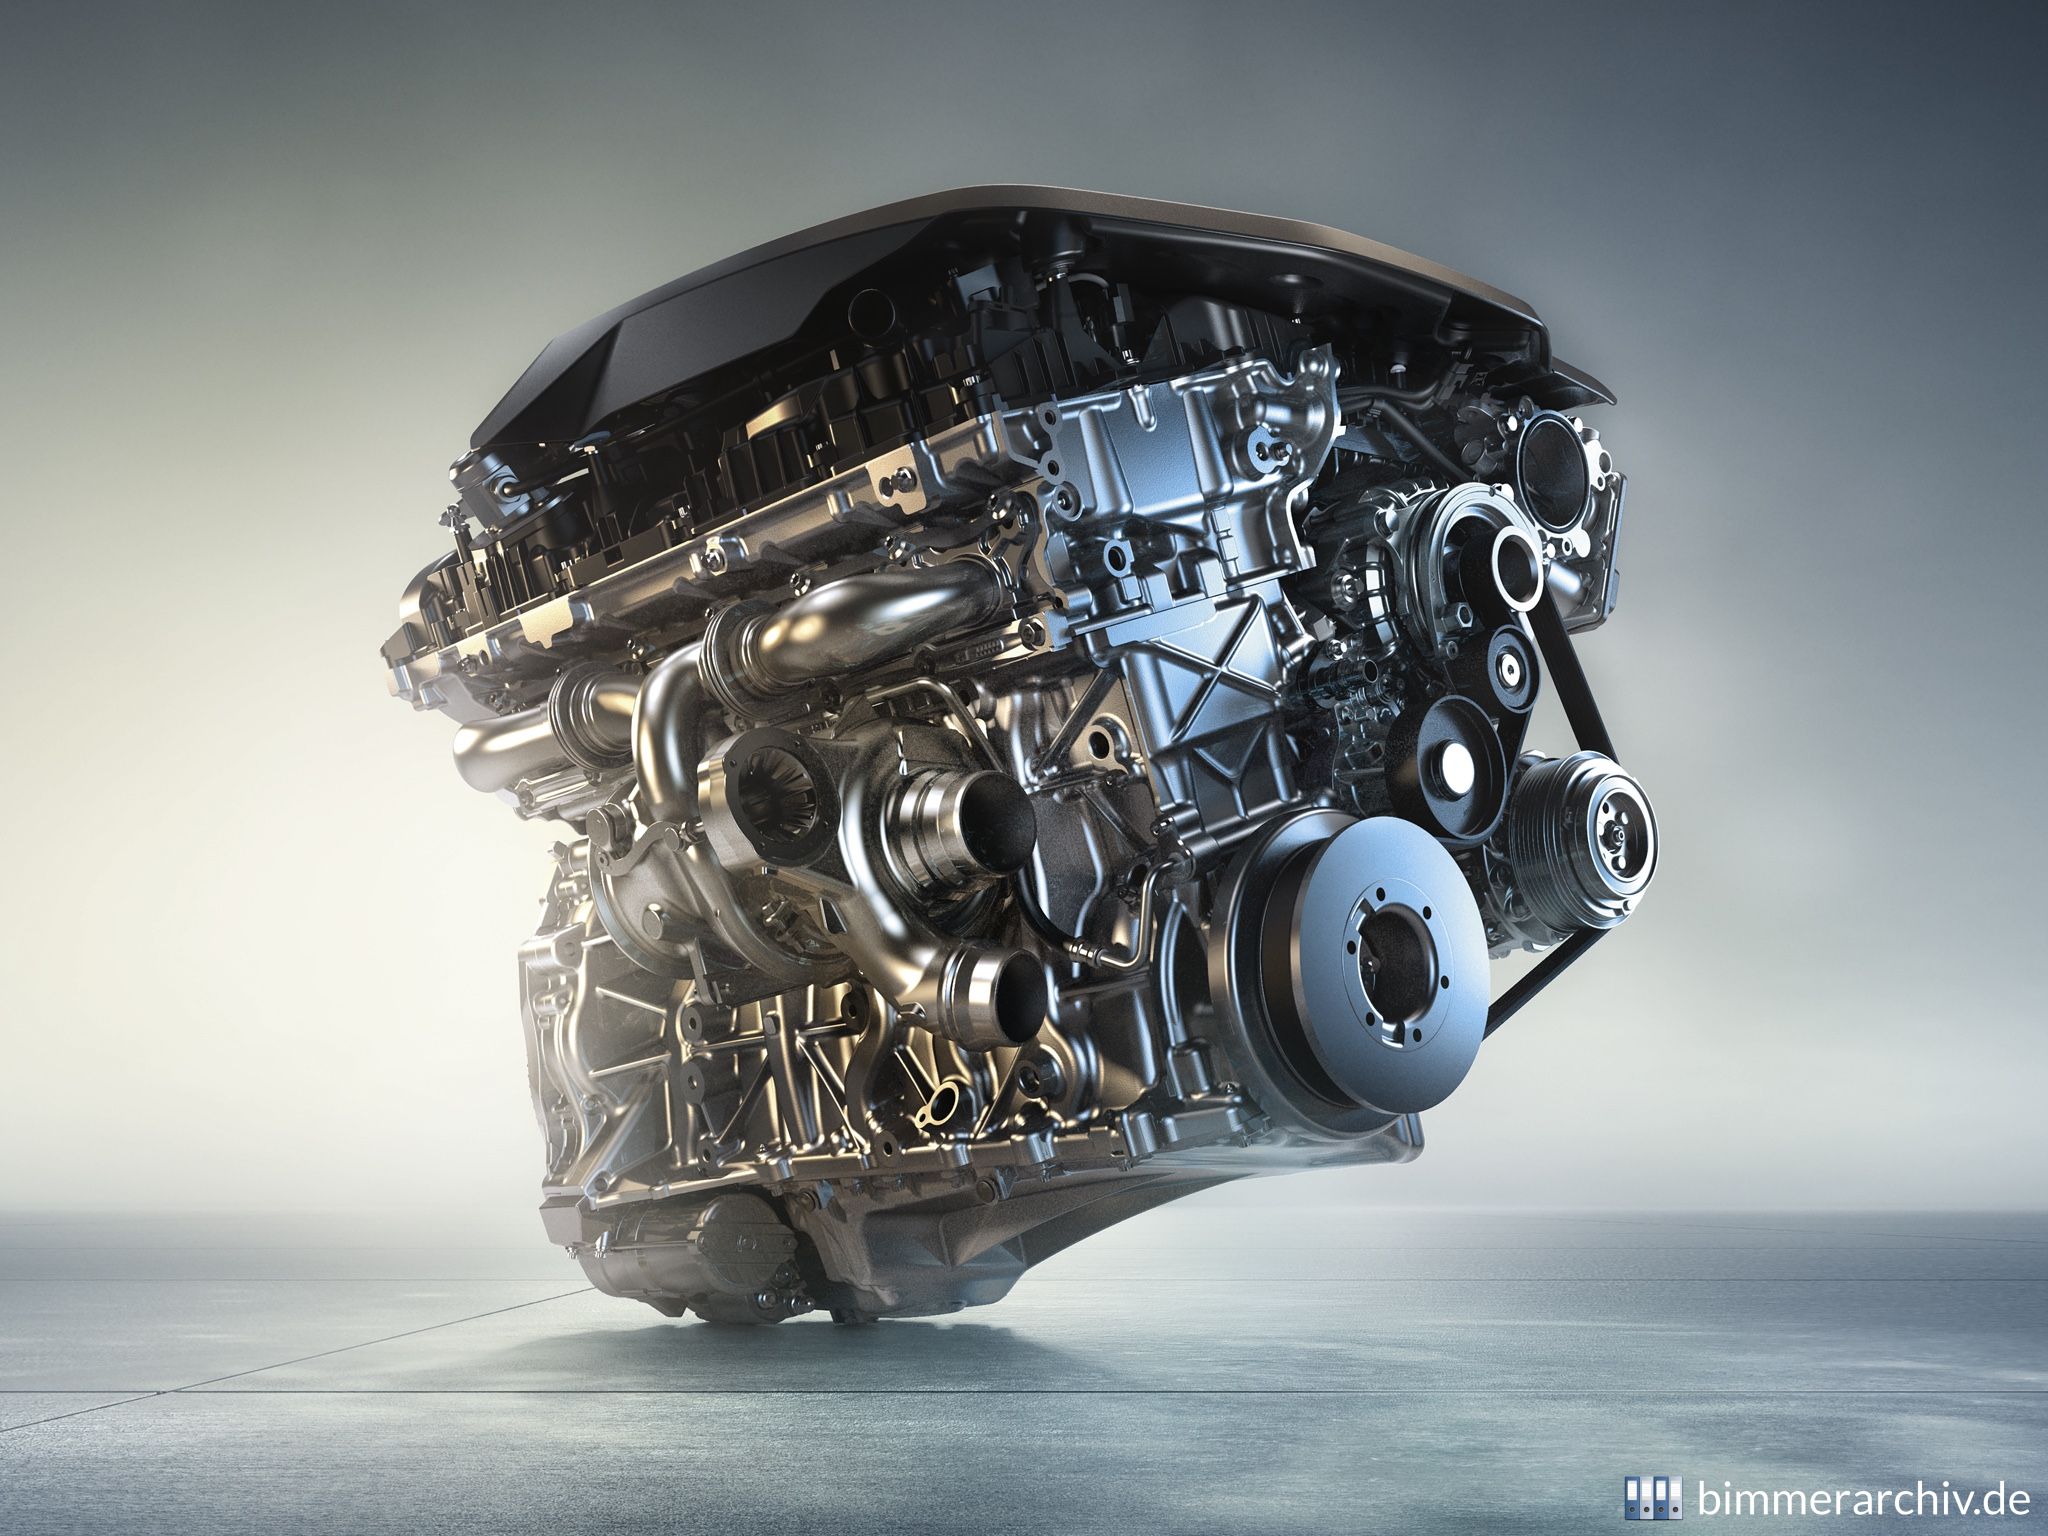 BMW TwinPower Turbo six-cylinder petrol engine